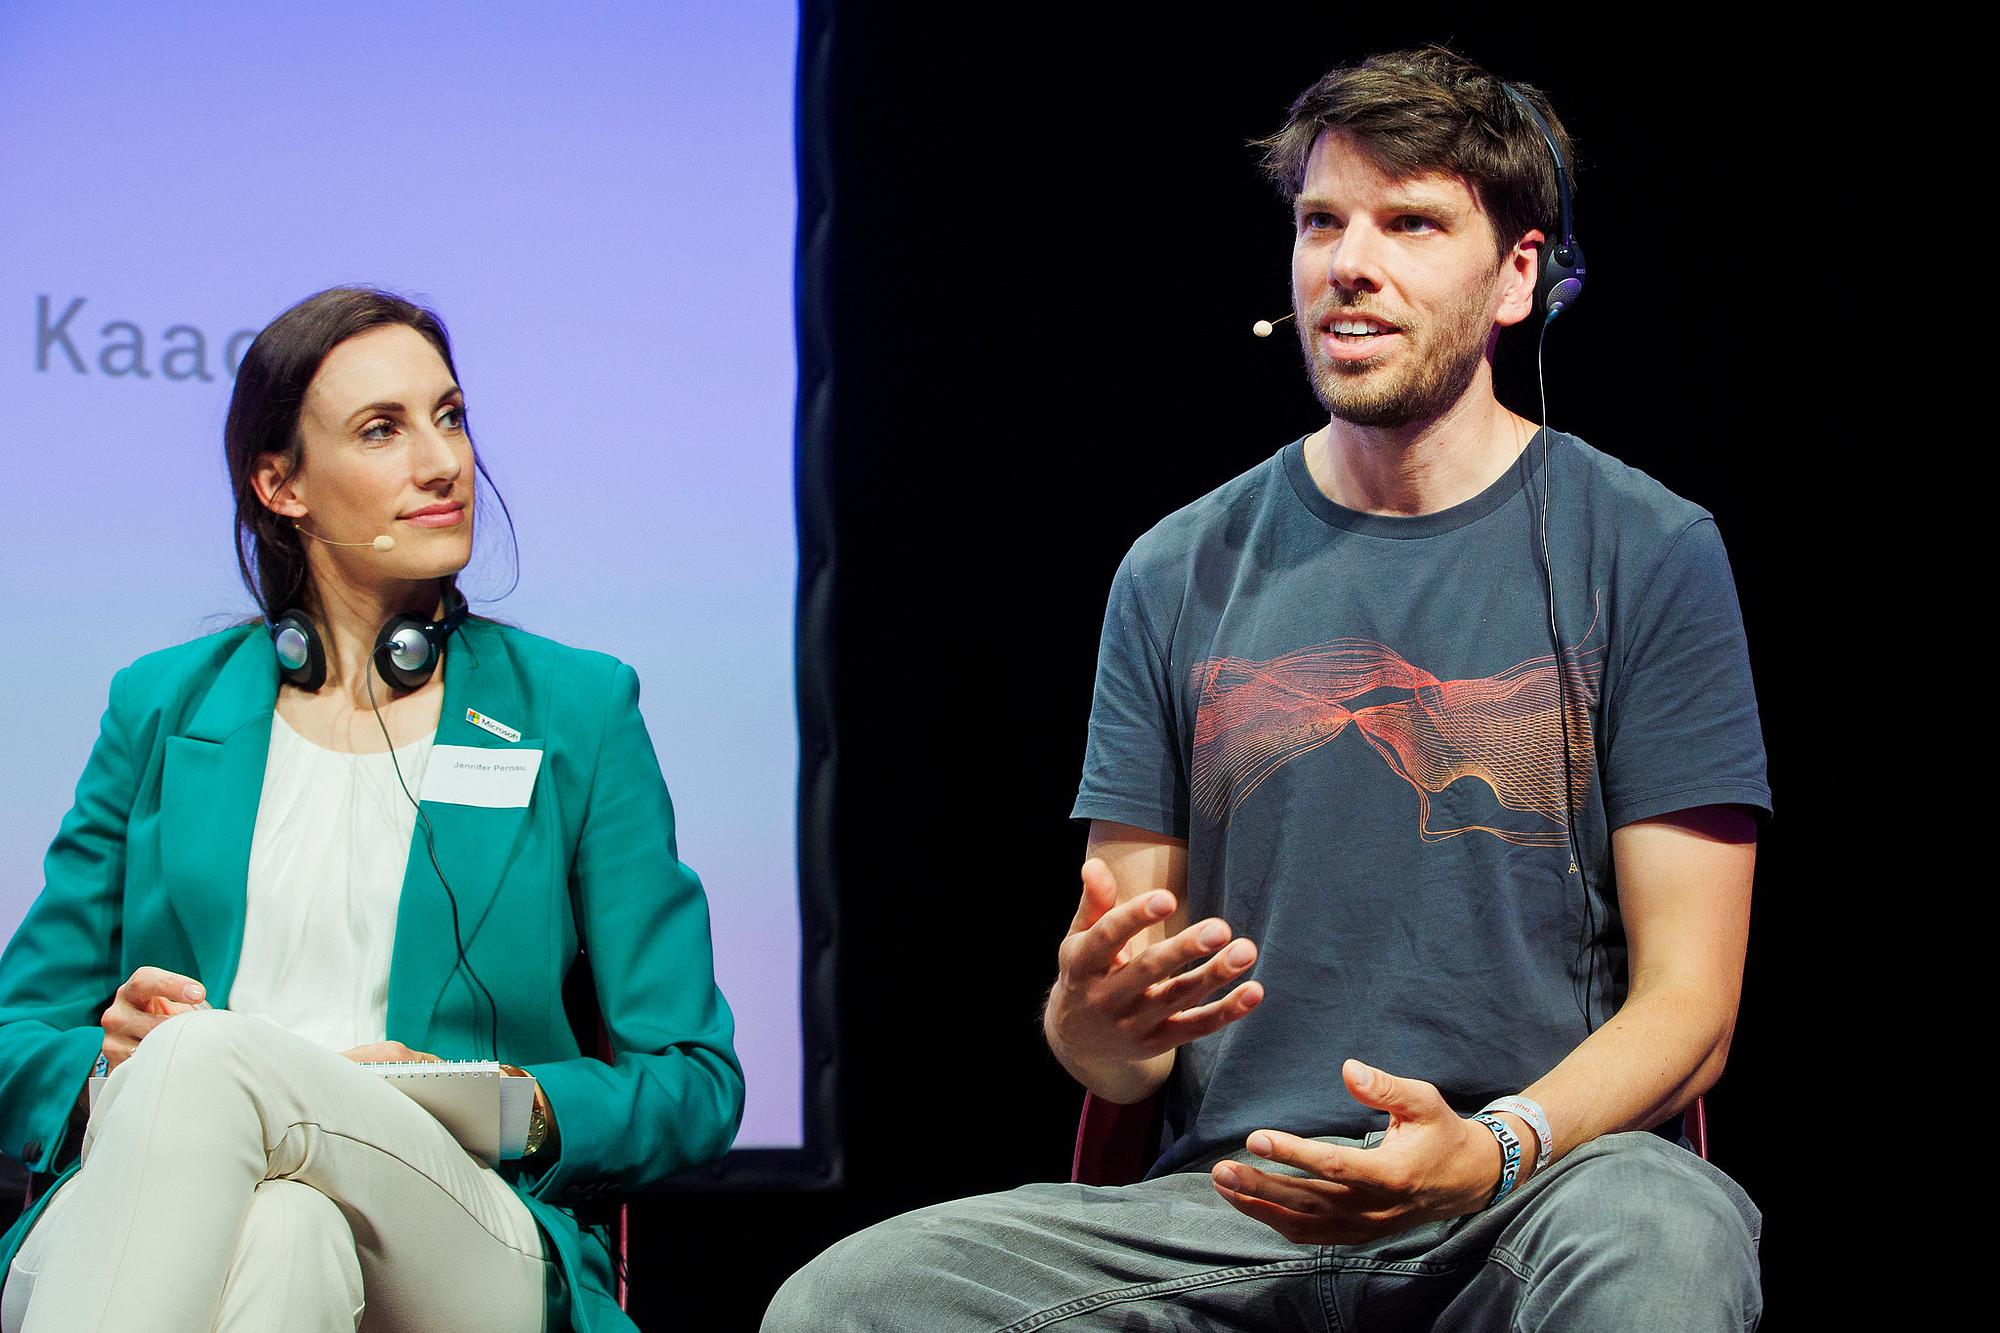 Ein Mann rechts spricht auf einer Bühne. Neben ihm sitzt eine Frau mit weißen T-Shirt und grünem Blazer